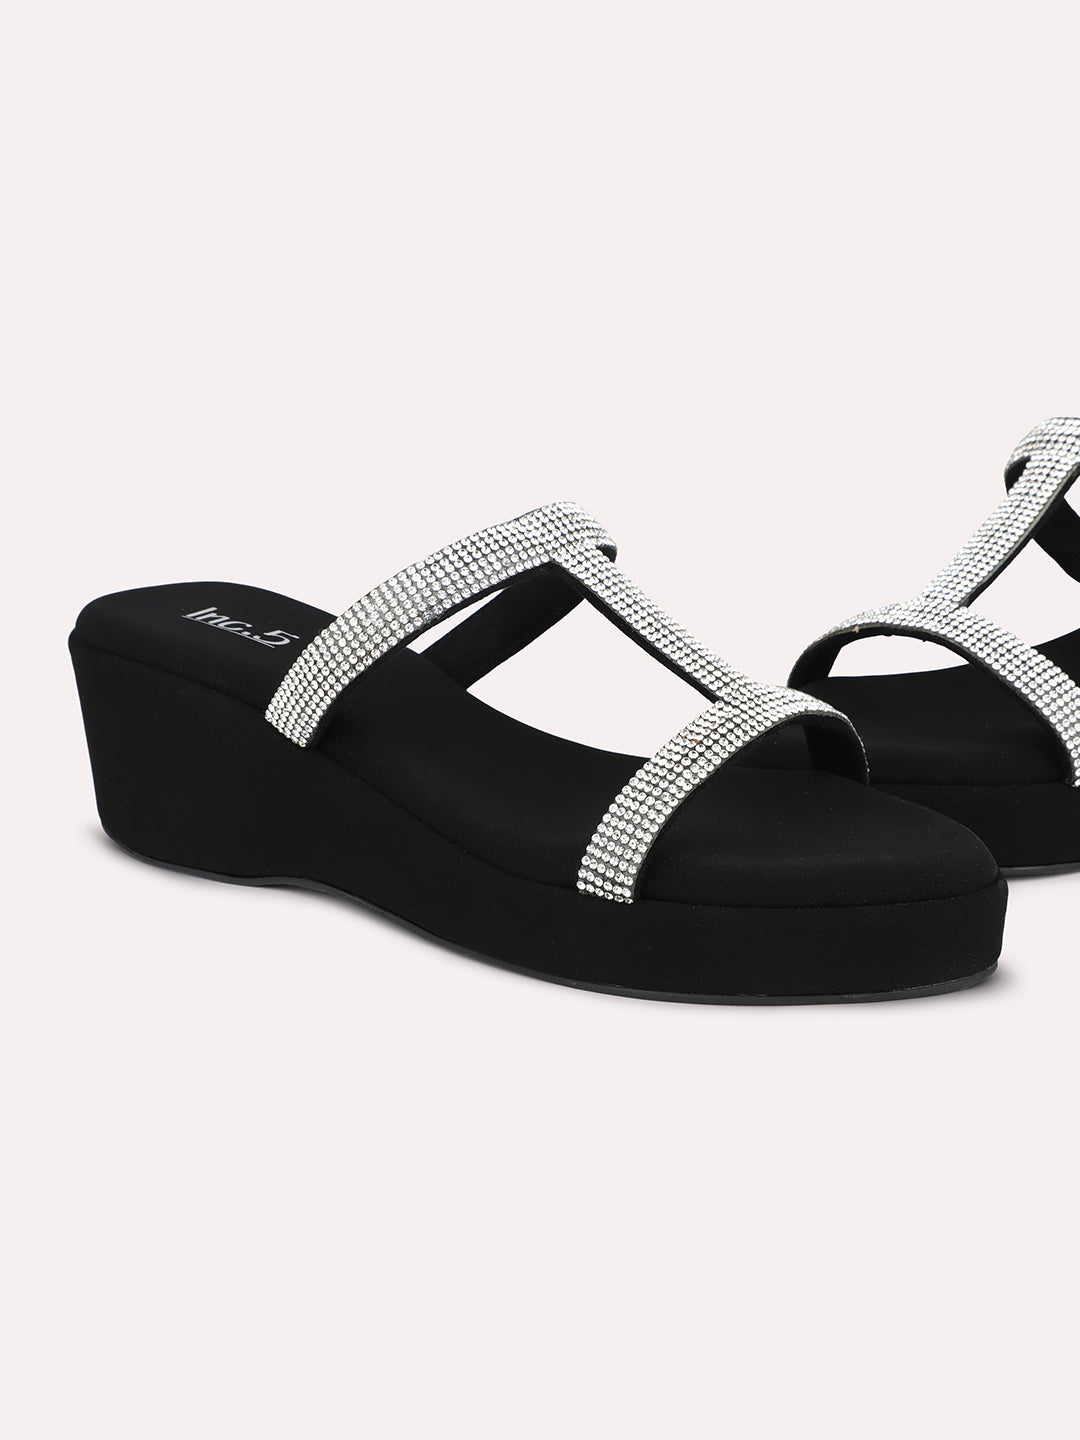 Women Silver-Toned & Black Embellished Open Toe Wedge Heels